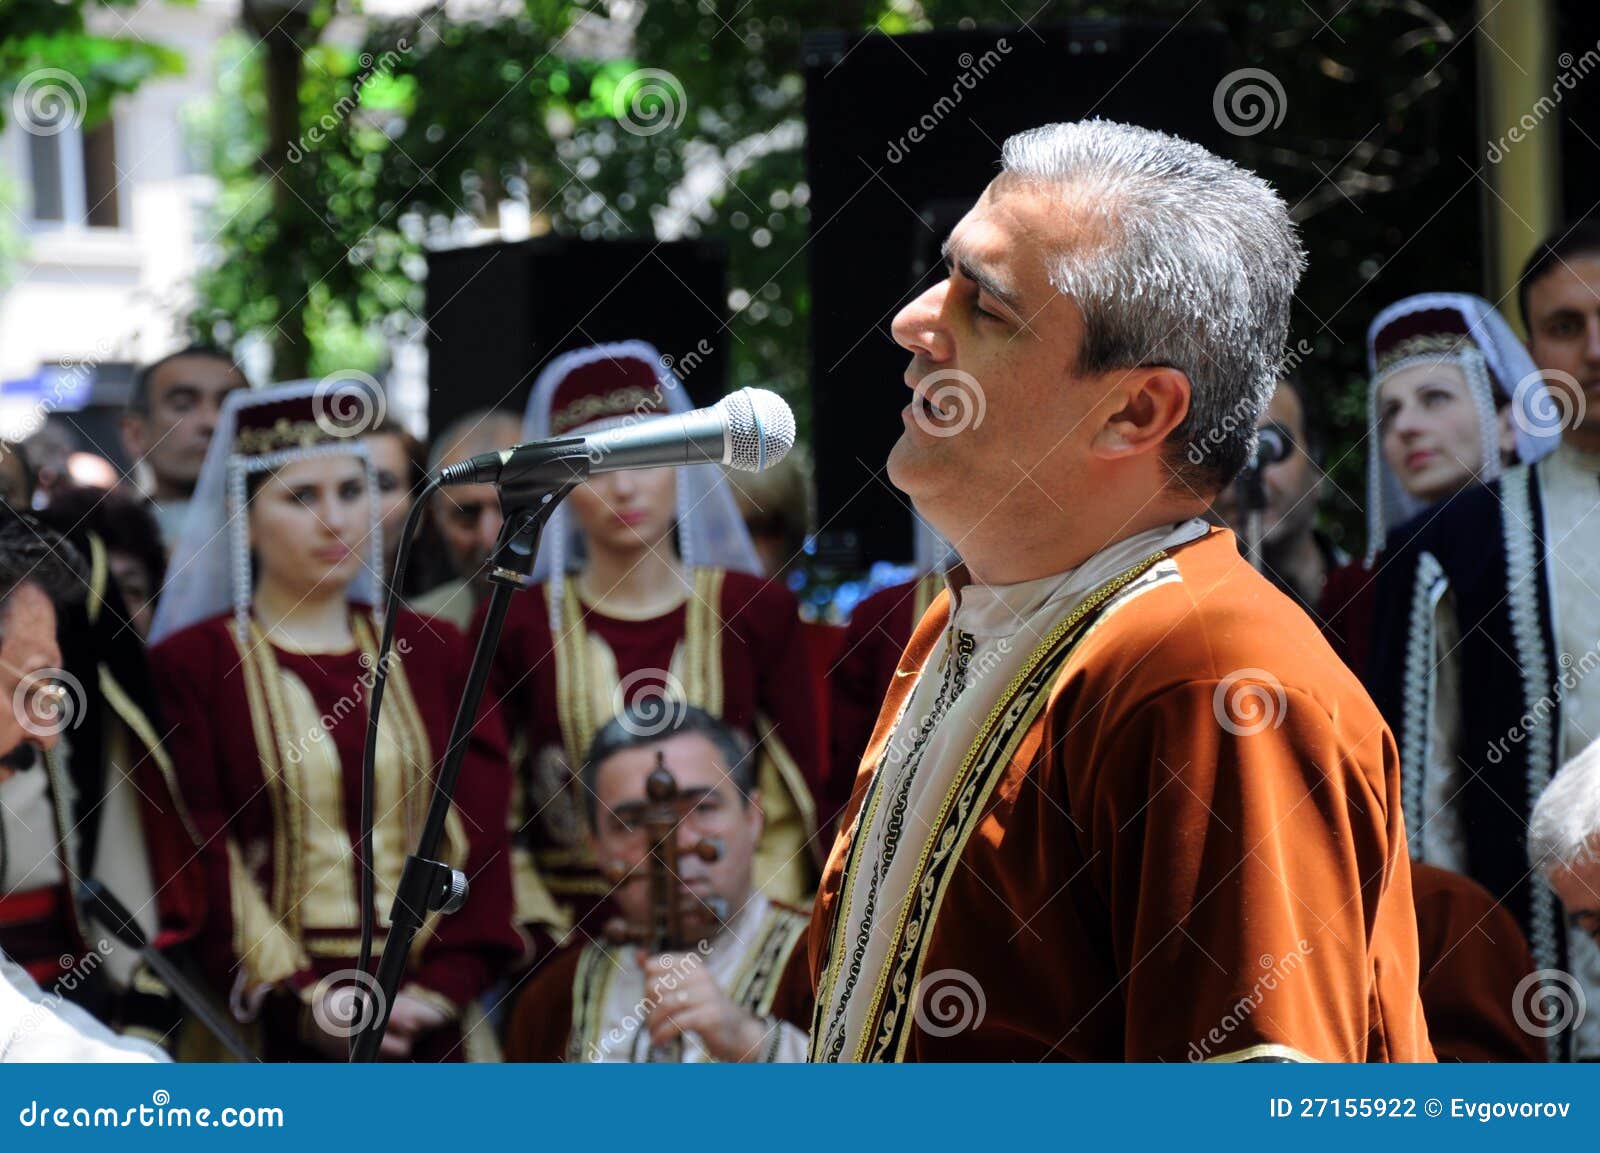 Пою с армянами. Армяне поют. Армянское пение. Поют армяне Певцы. Поет Армения.